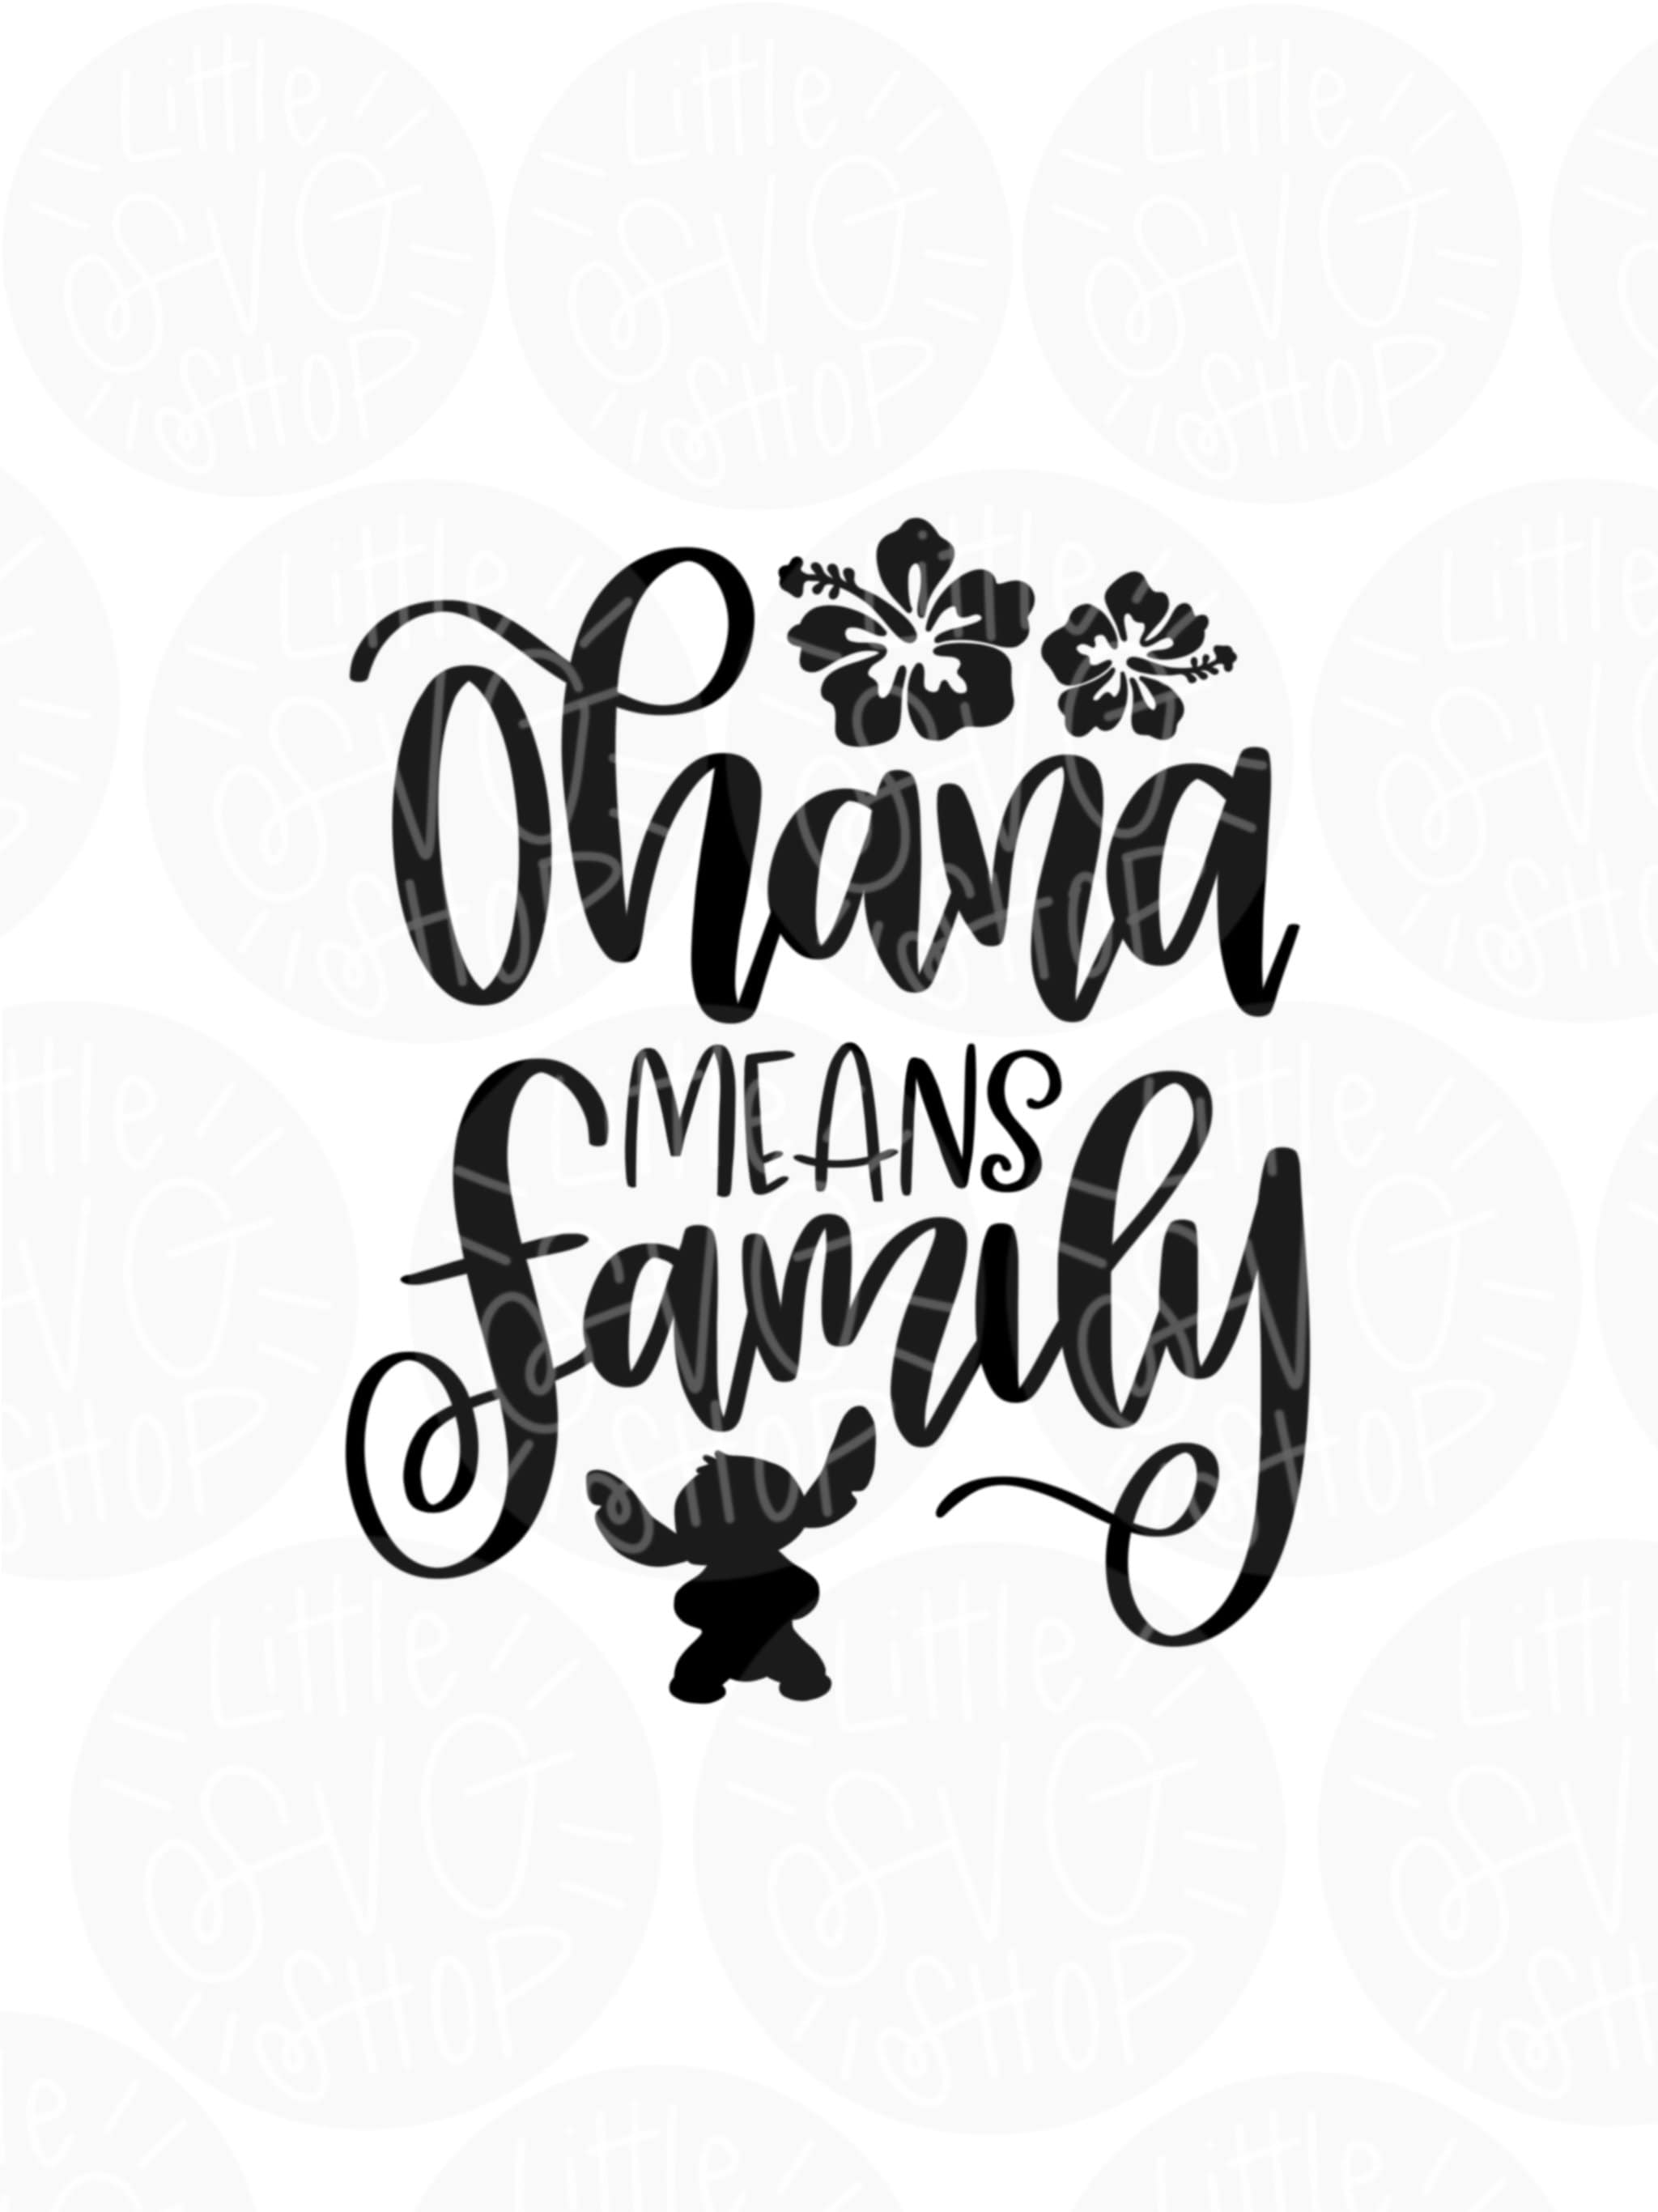 Download Ohana means family SVG Lilo and Stitch svg disney SVG | Etsy